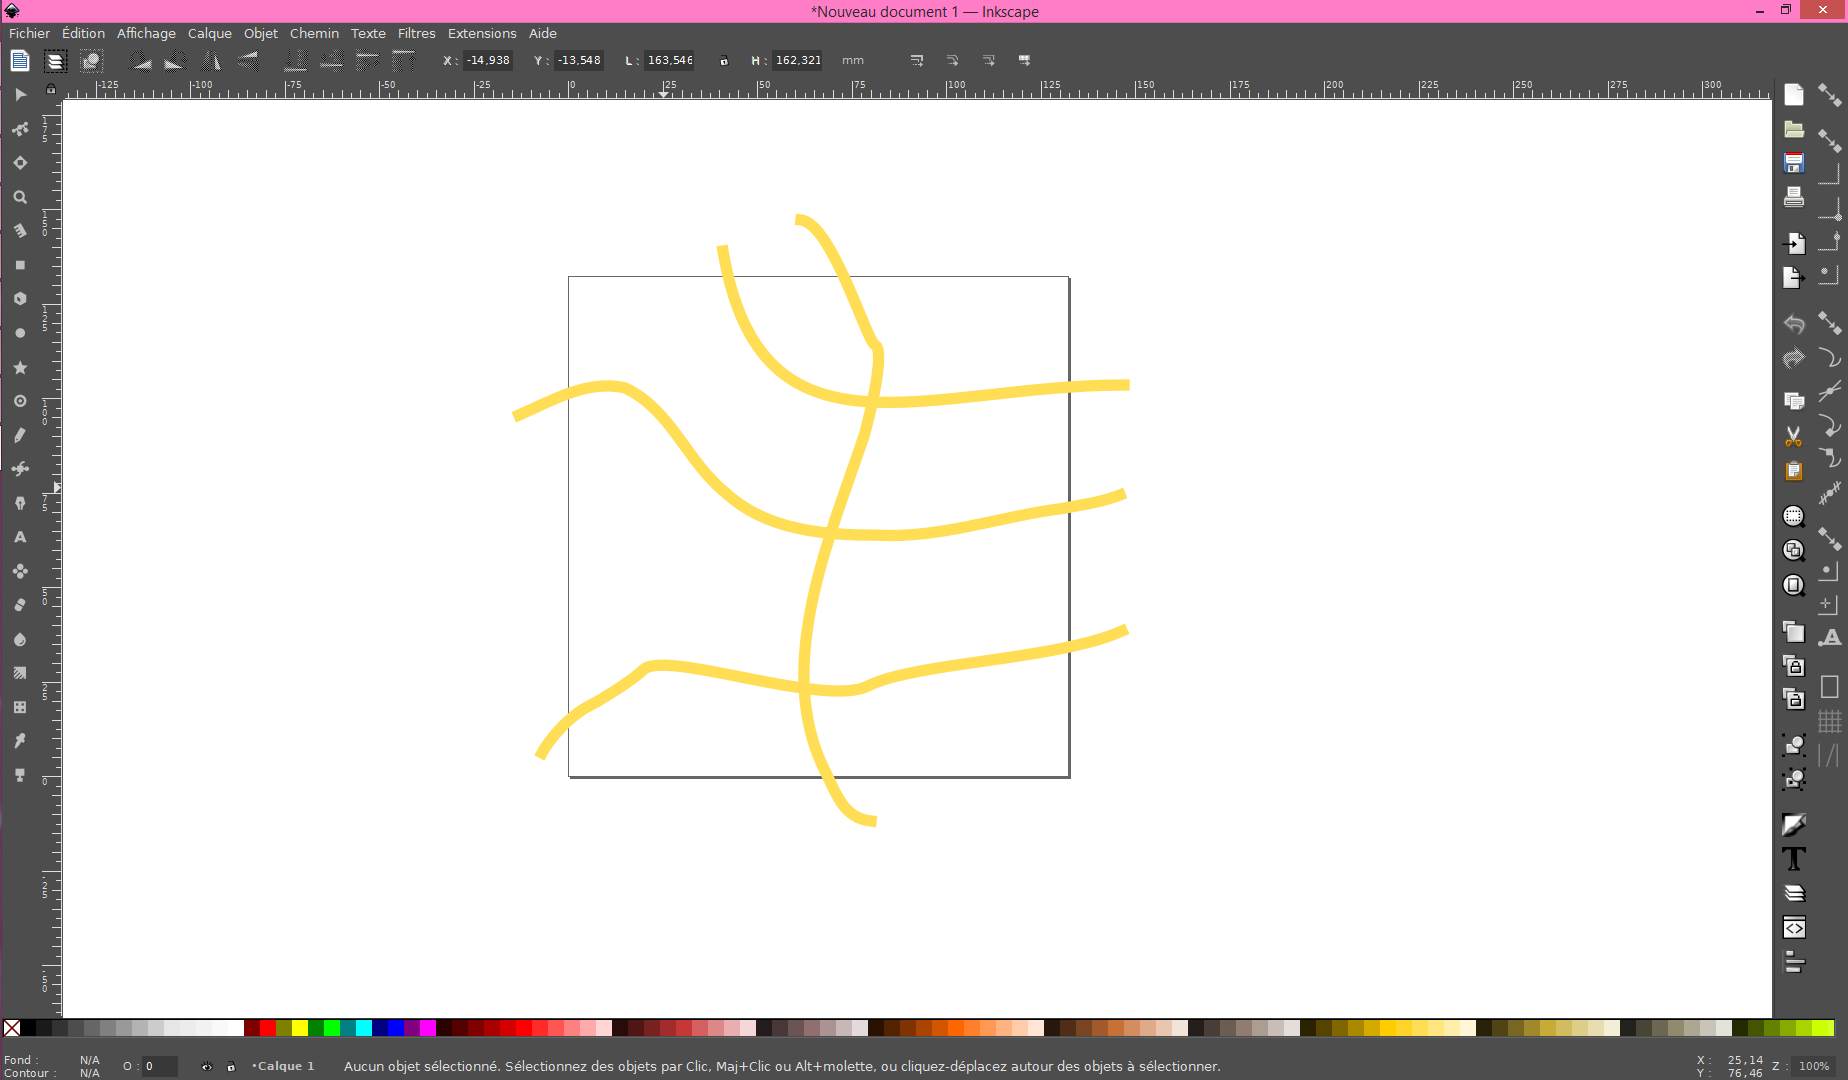 Image du tutoriel “comment dessiner un réseau routier sur Inkscape”